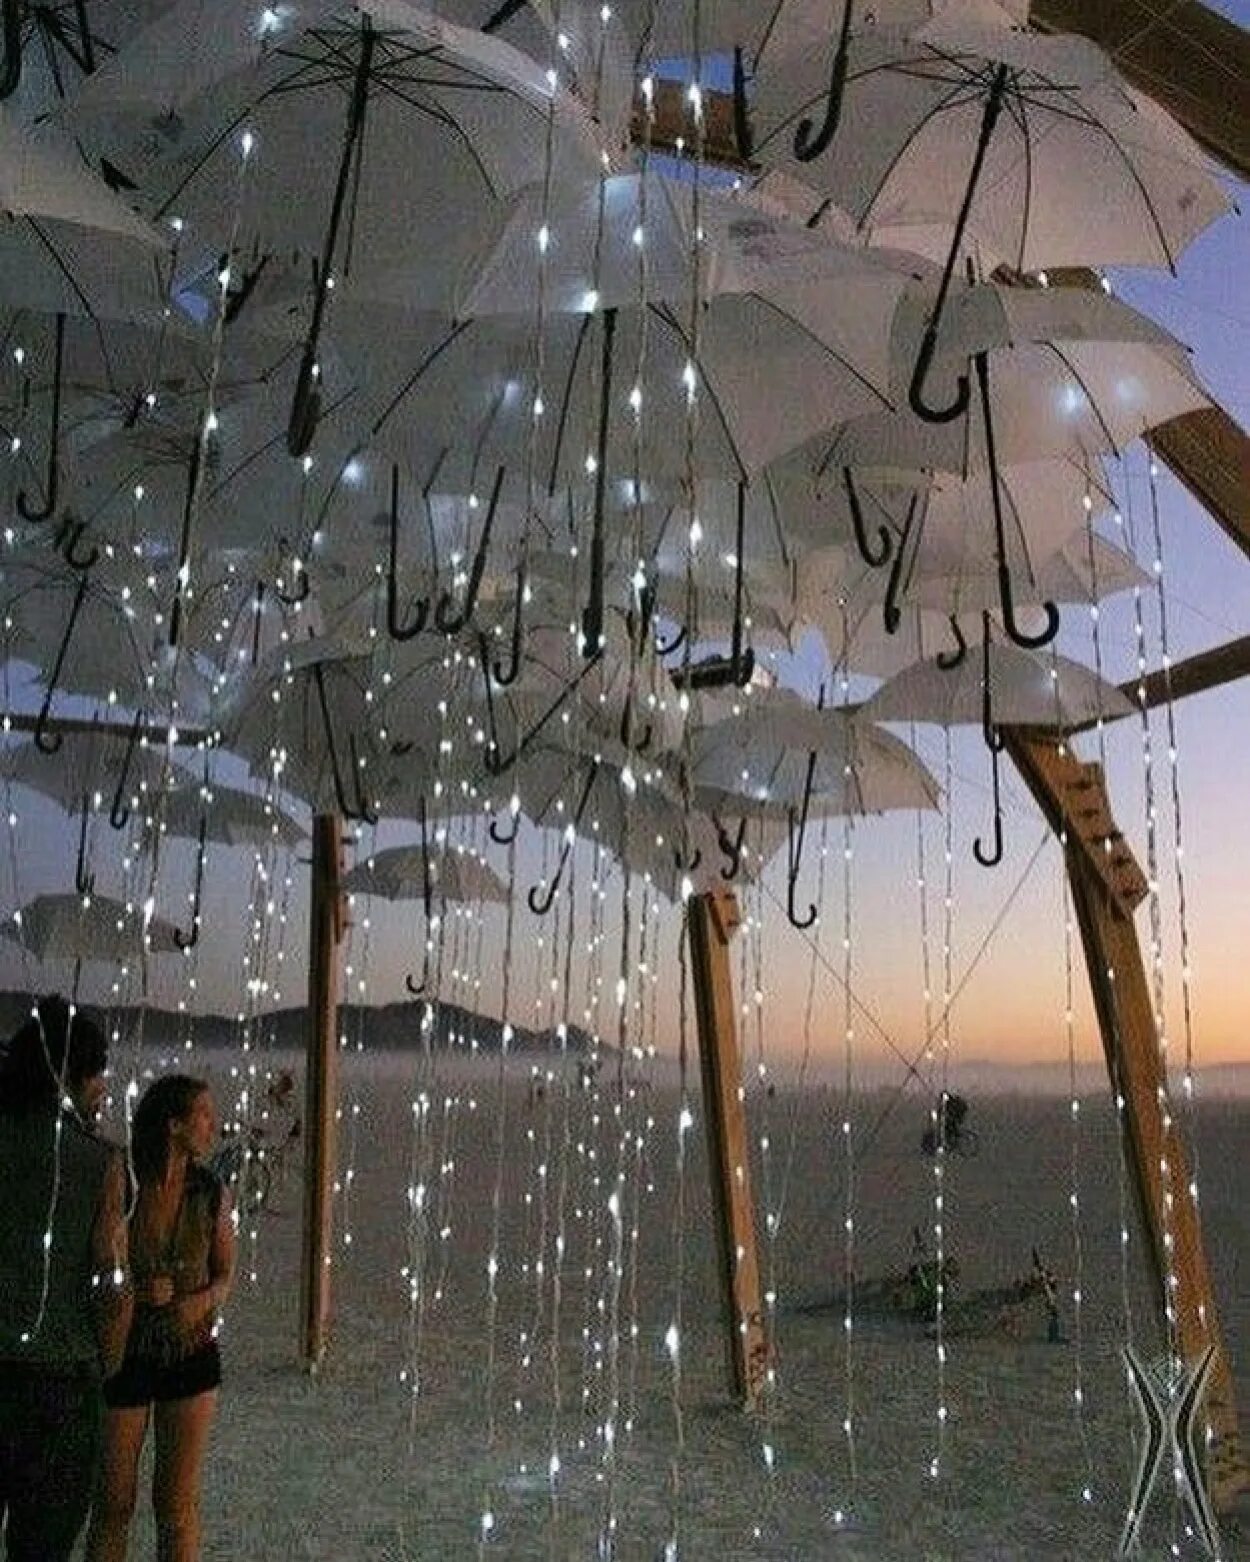 То есть целый день будет дождь. Инсталляция с зонтами. Хорошего настроения в дождливую погоду. Свадебная инсталляция. Фотозона с зонтами.